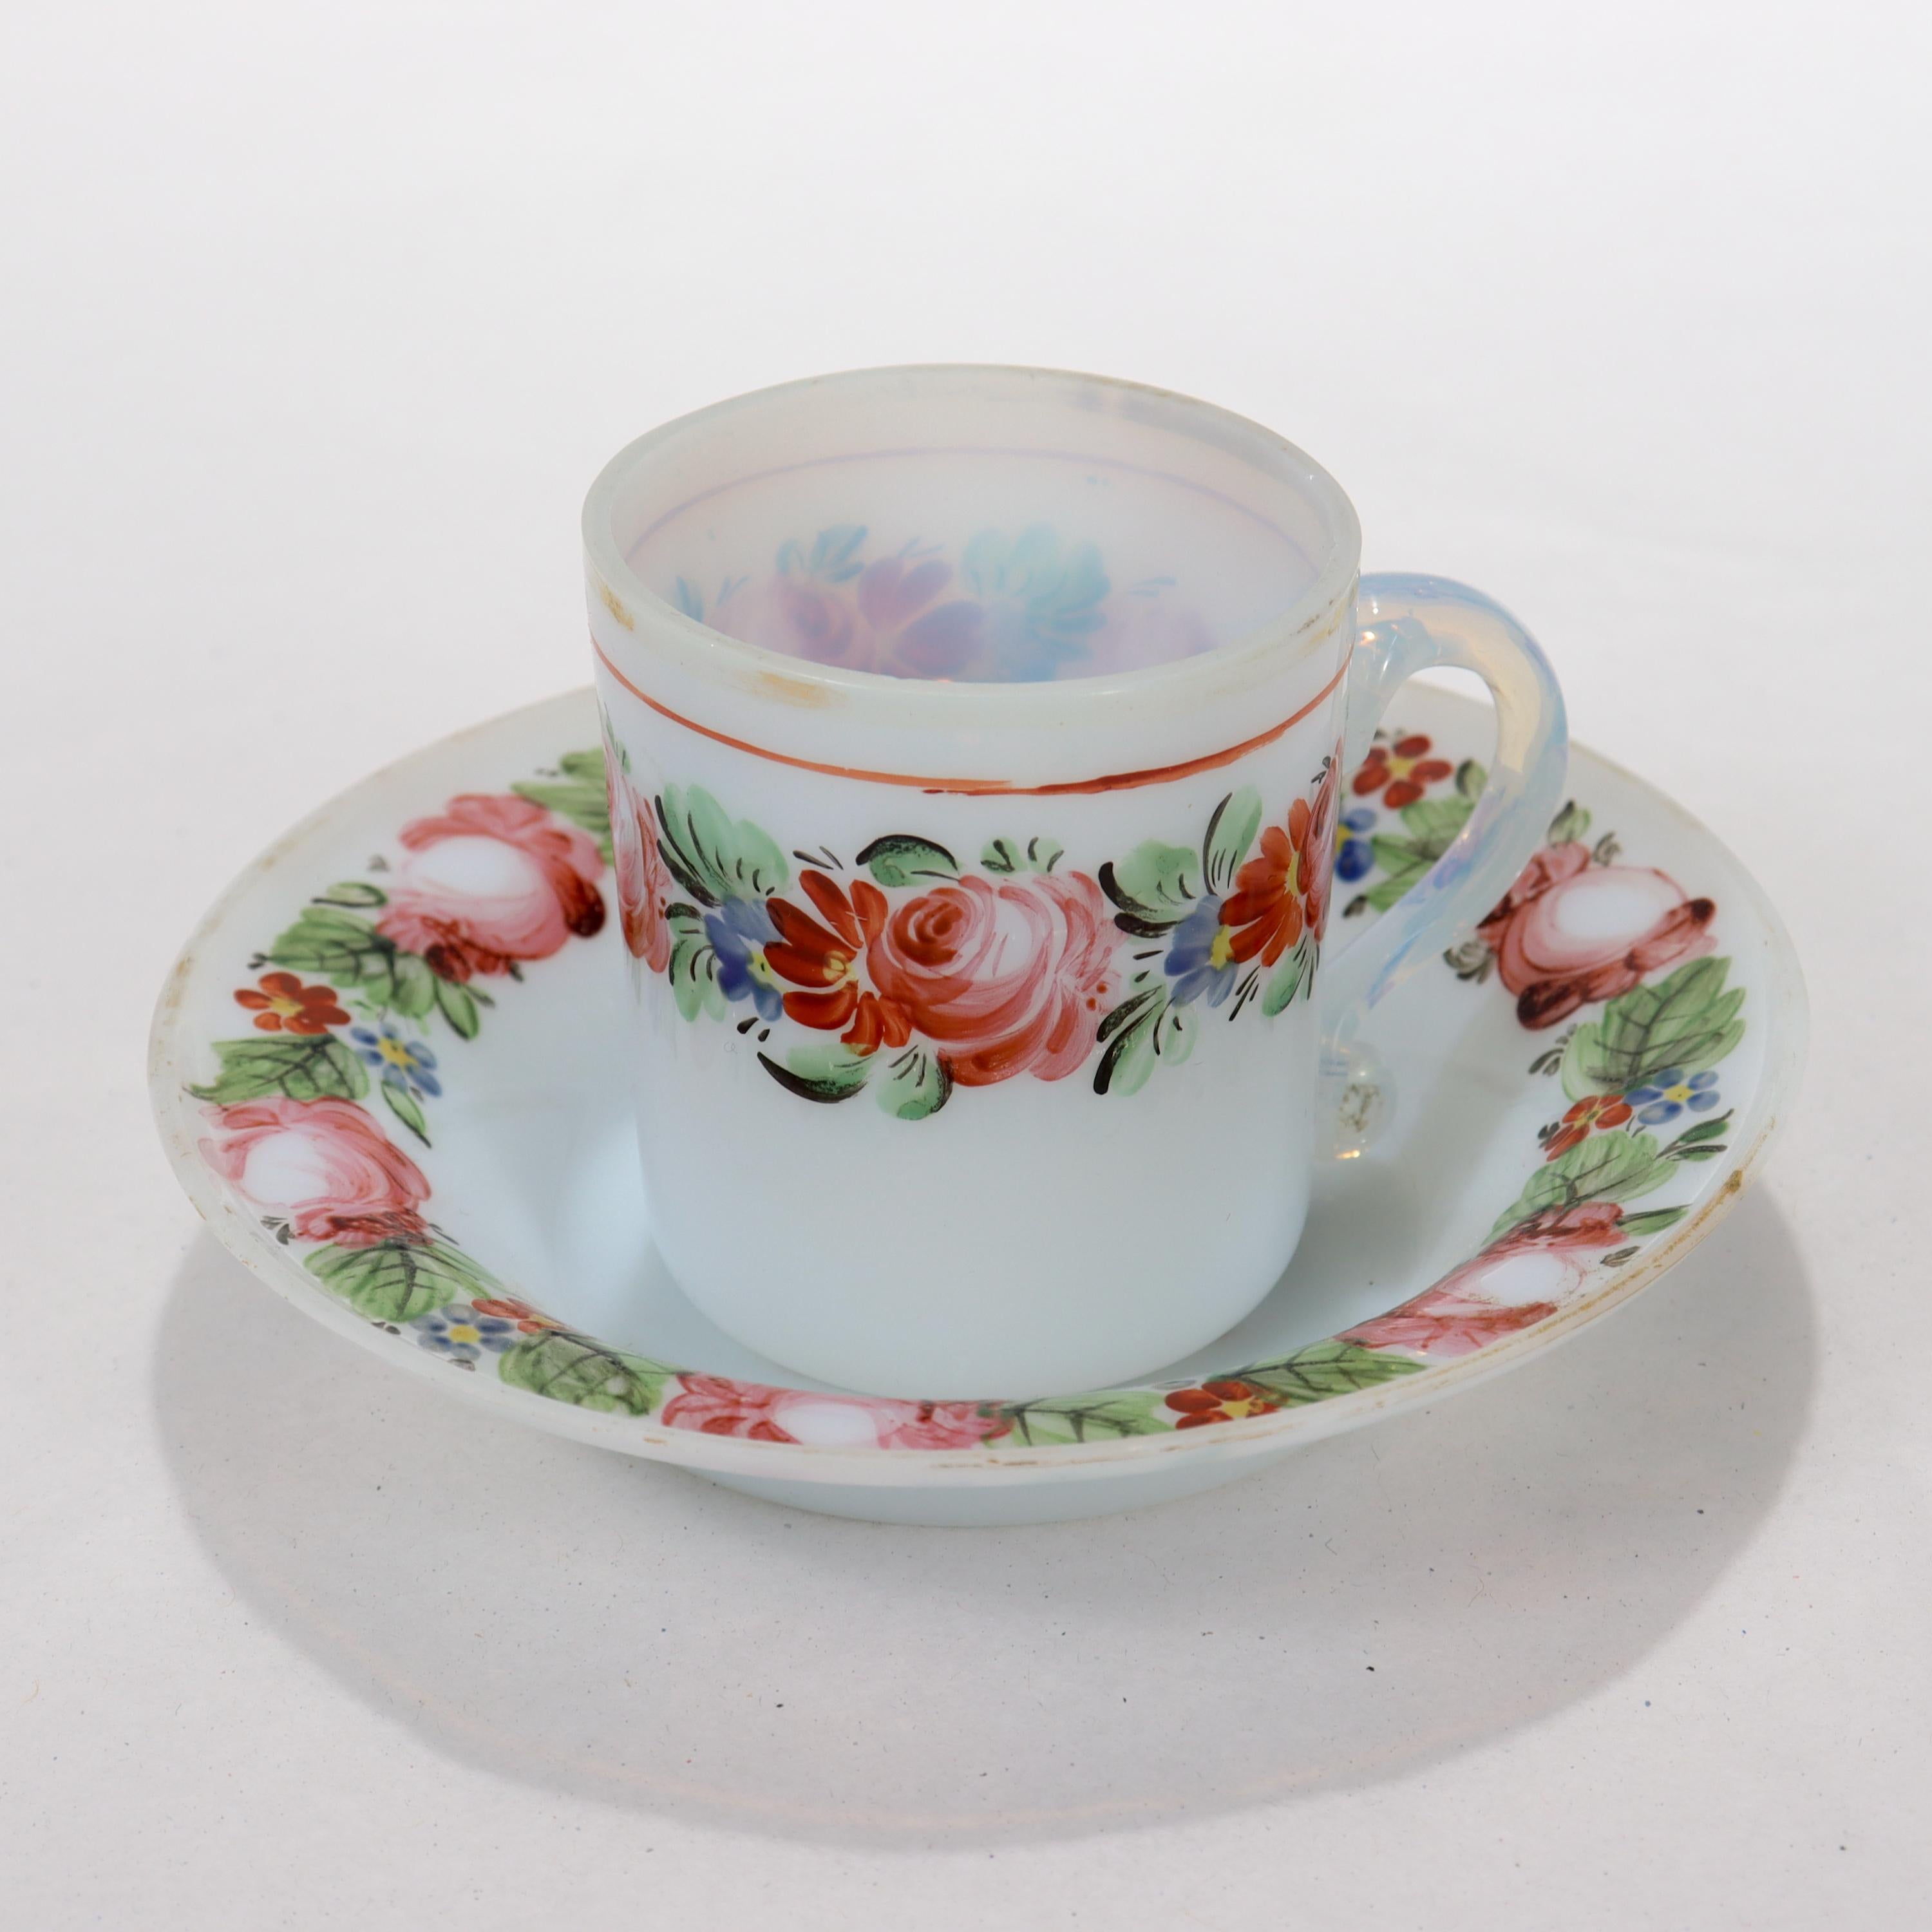 Eine feine antike weiße Opal- oder Opalglas-Tasse mit Untertasse.

Mit handgemalten Blumengirlanden auf dem Körper der Tasse und dem Rand der Untertasse sowie Spuren der ursprünglichen Vergoldung.

Einfach ein wunderbares frühes Tassen- und